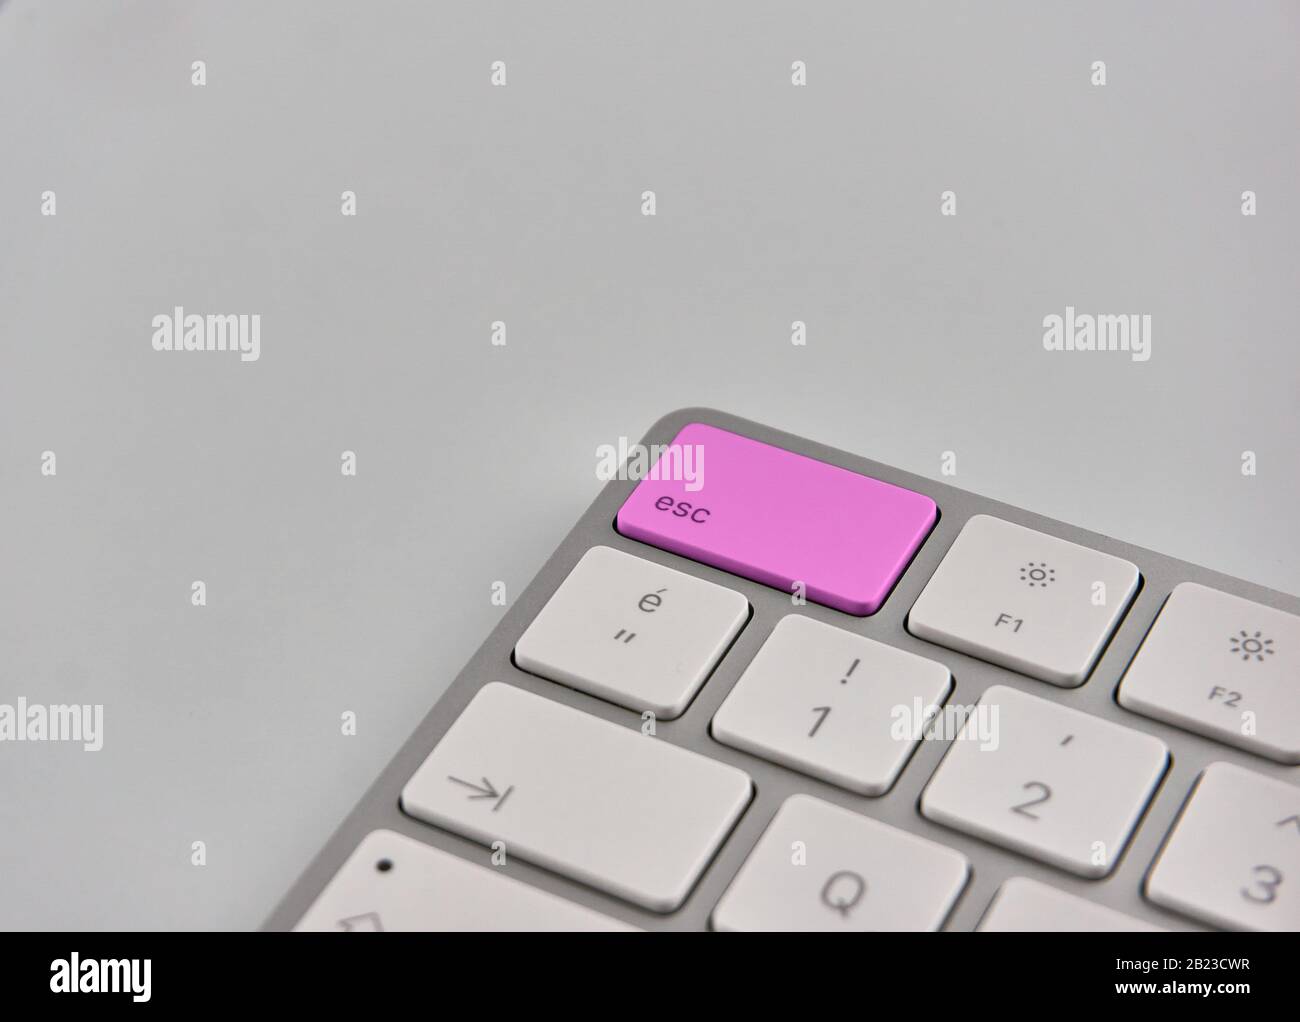 Teil einer Tastatur mit violetter esc-Taste Stockfoto